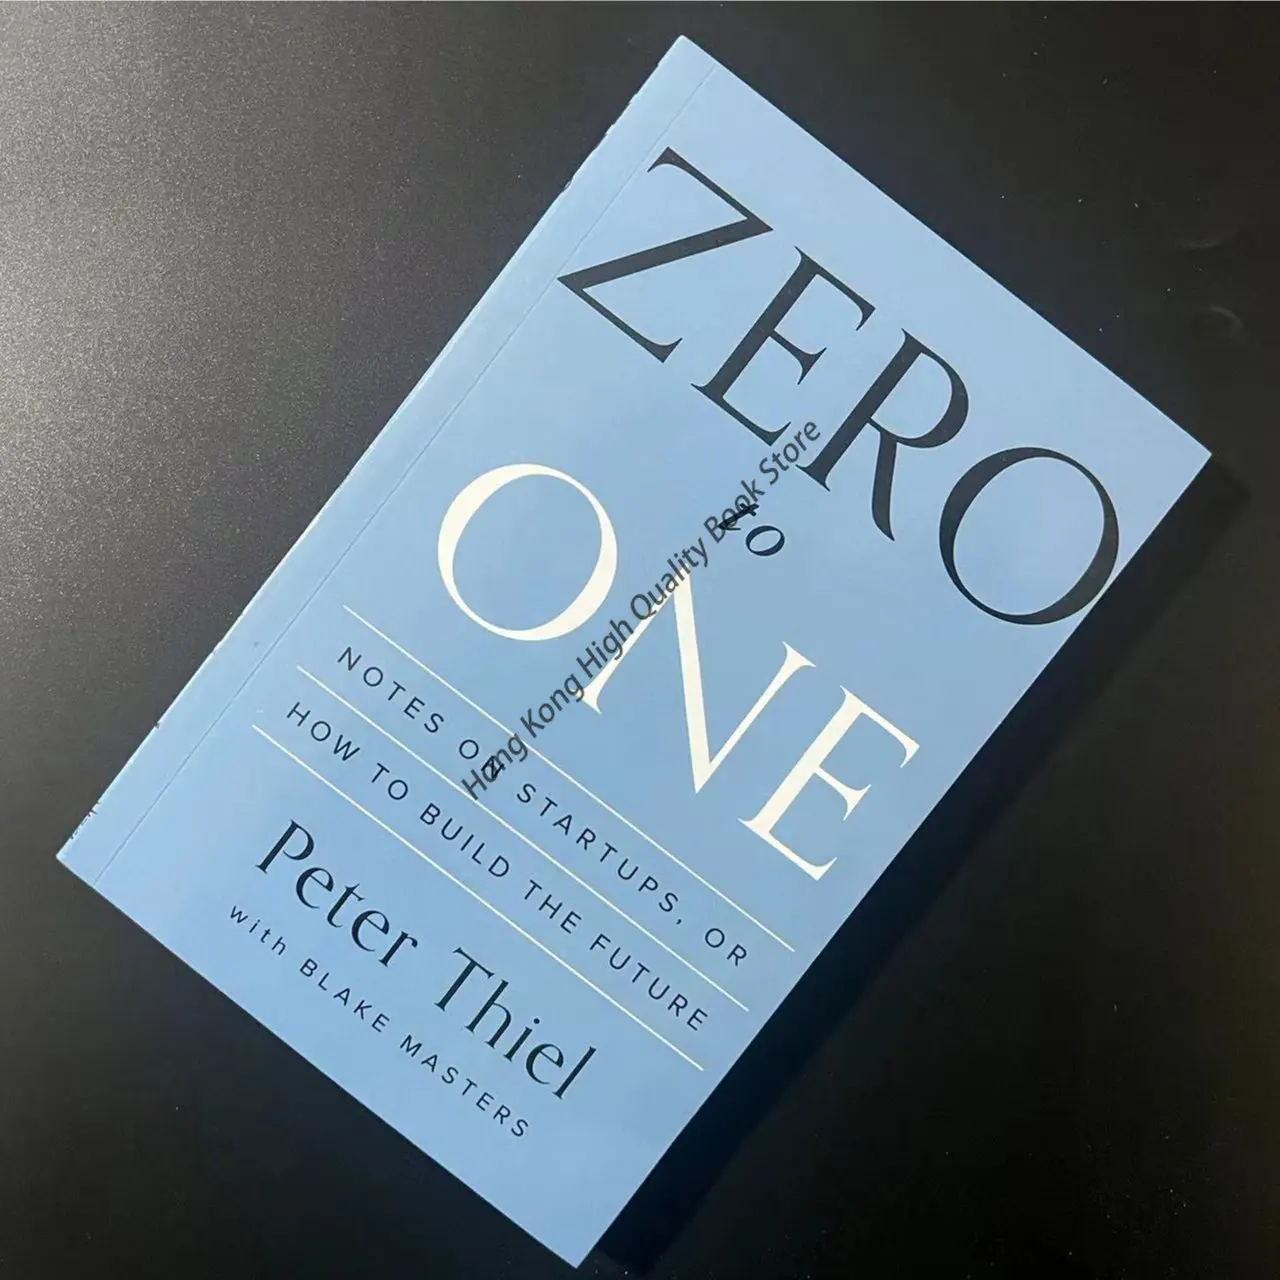 Peter Thiel & Blake Masters: Zero to One